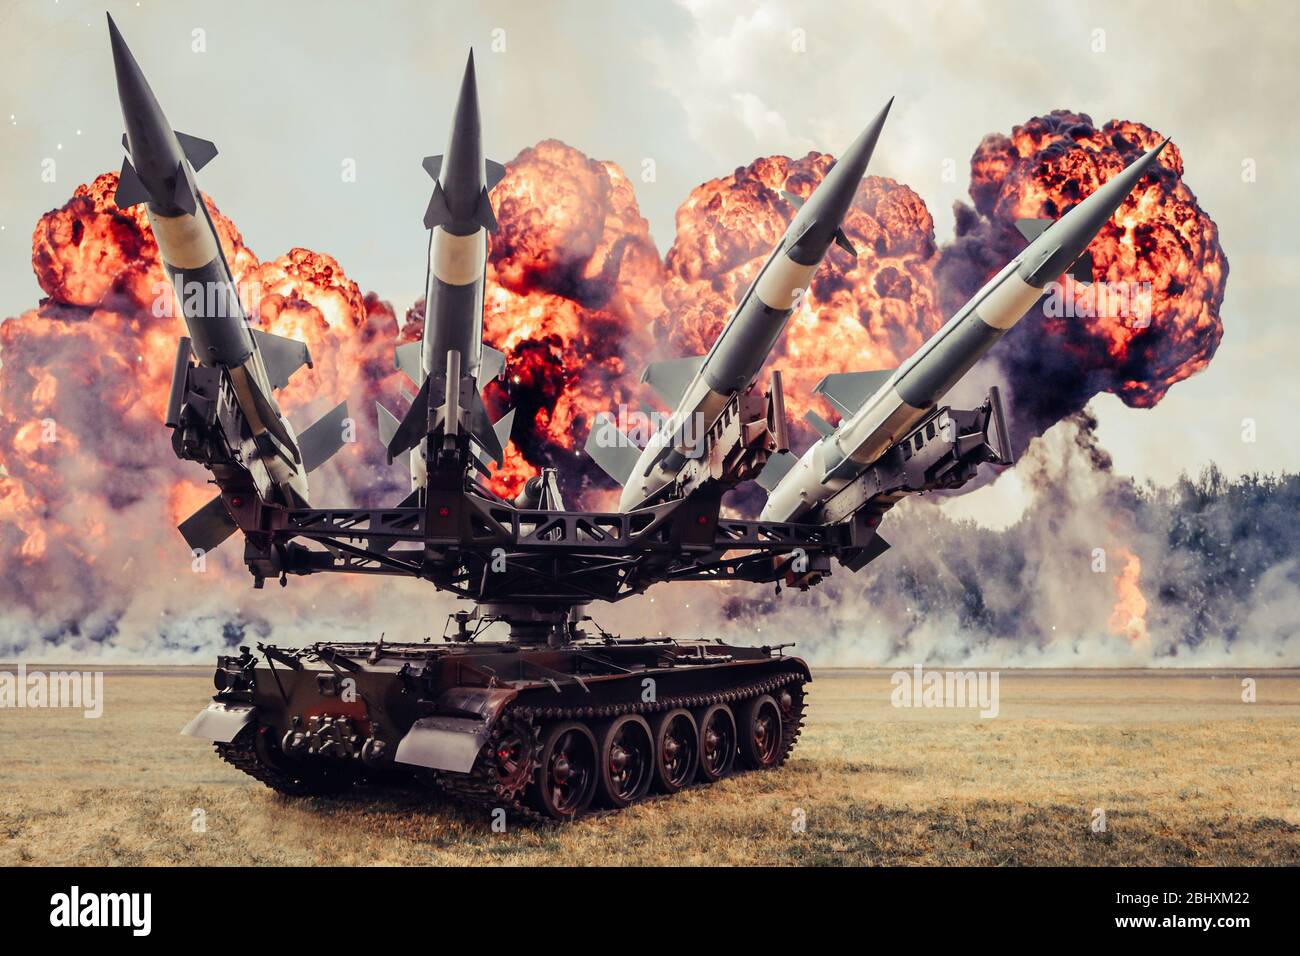 Radom, Mazowieckie / Pologne - 23 août 2015 : lanceur de missiles avec ogives sur la bande de roulement caterpillar, explosions en arrière-plan. Banque D'Images